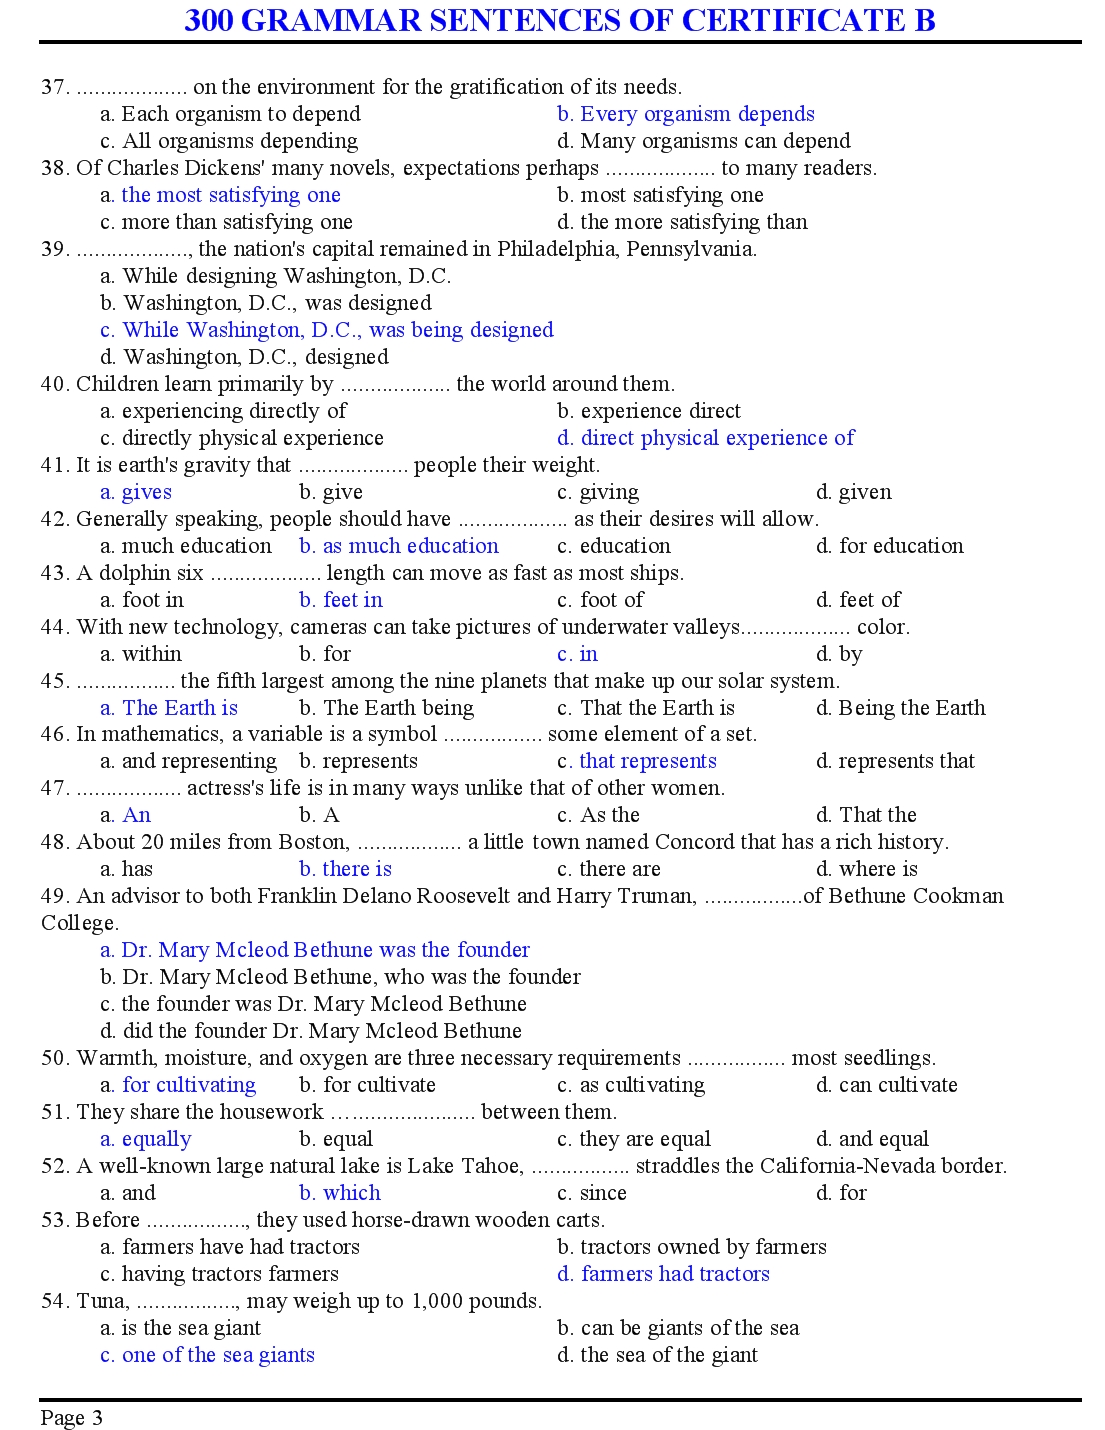 300 grammar sentences of certificate b trang 3